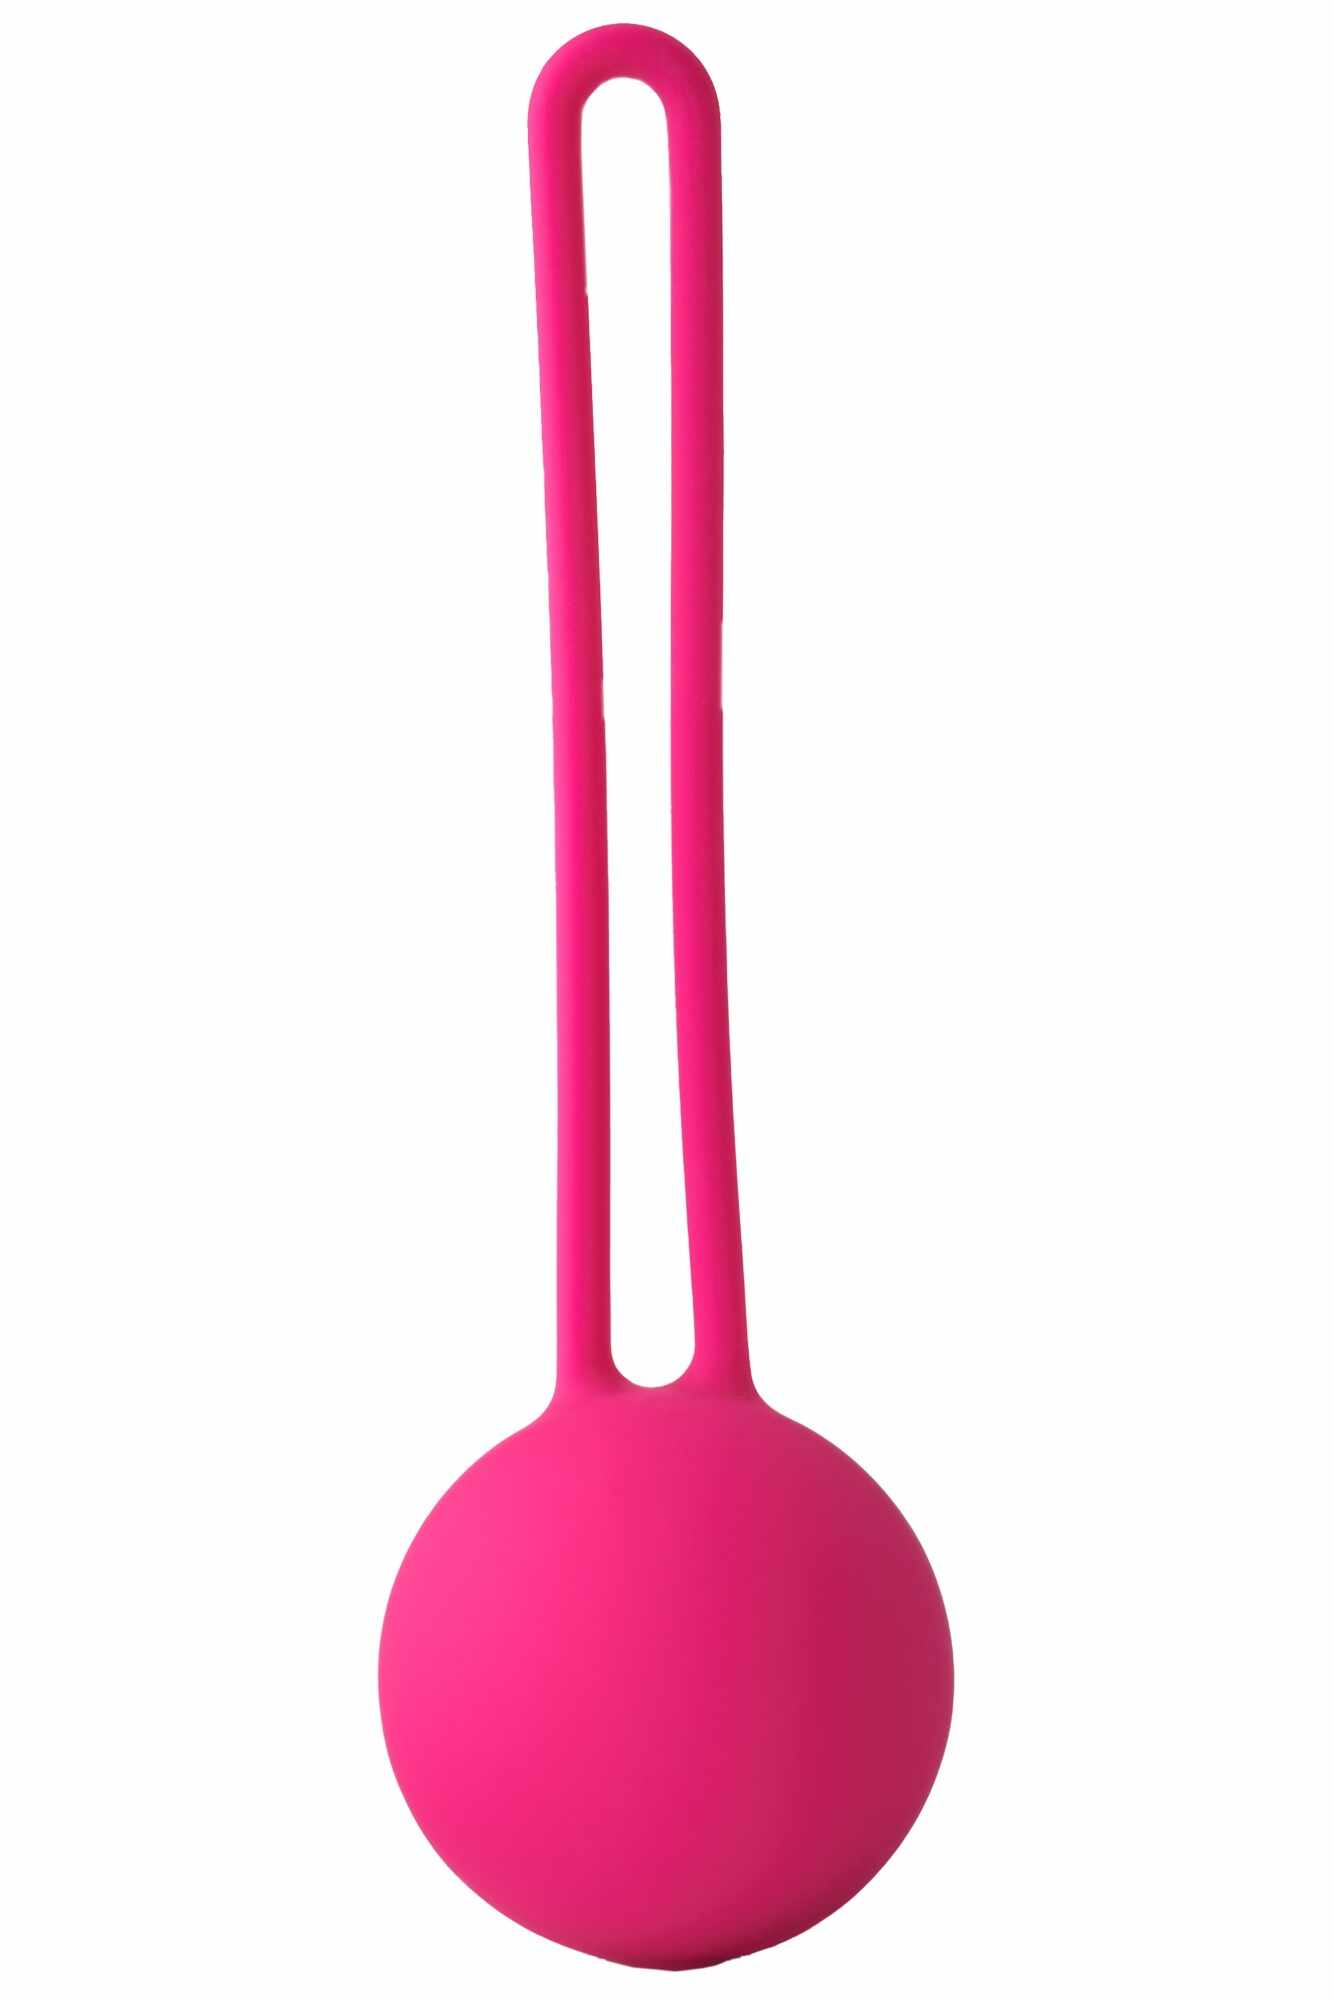 Bila Vaginala Kegel, Silicon, Roz, 11.5 cm